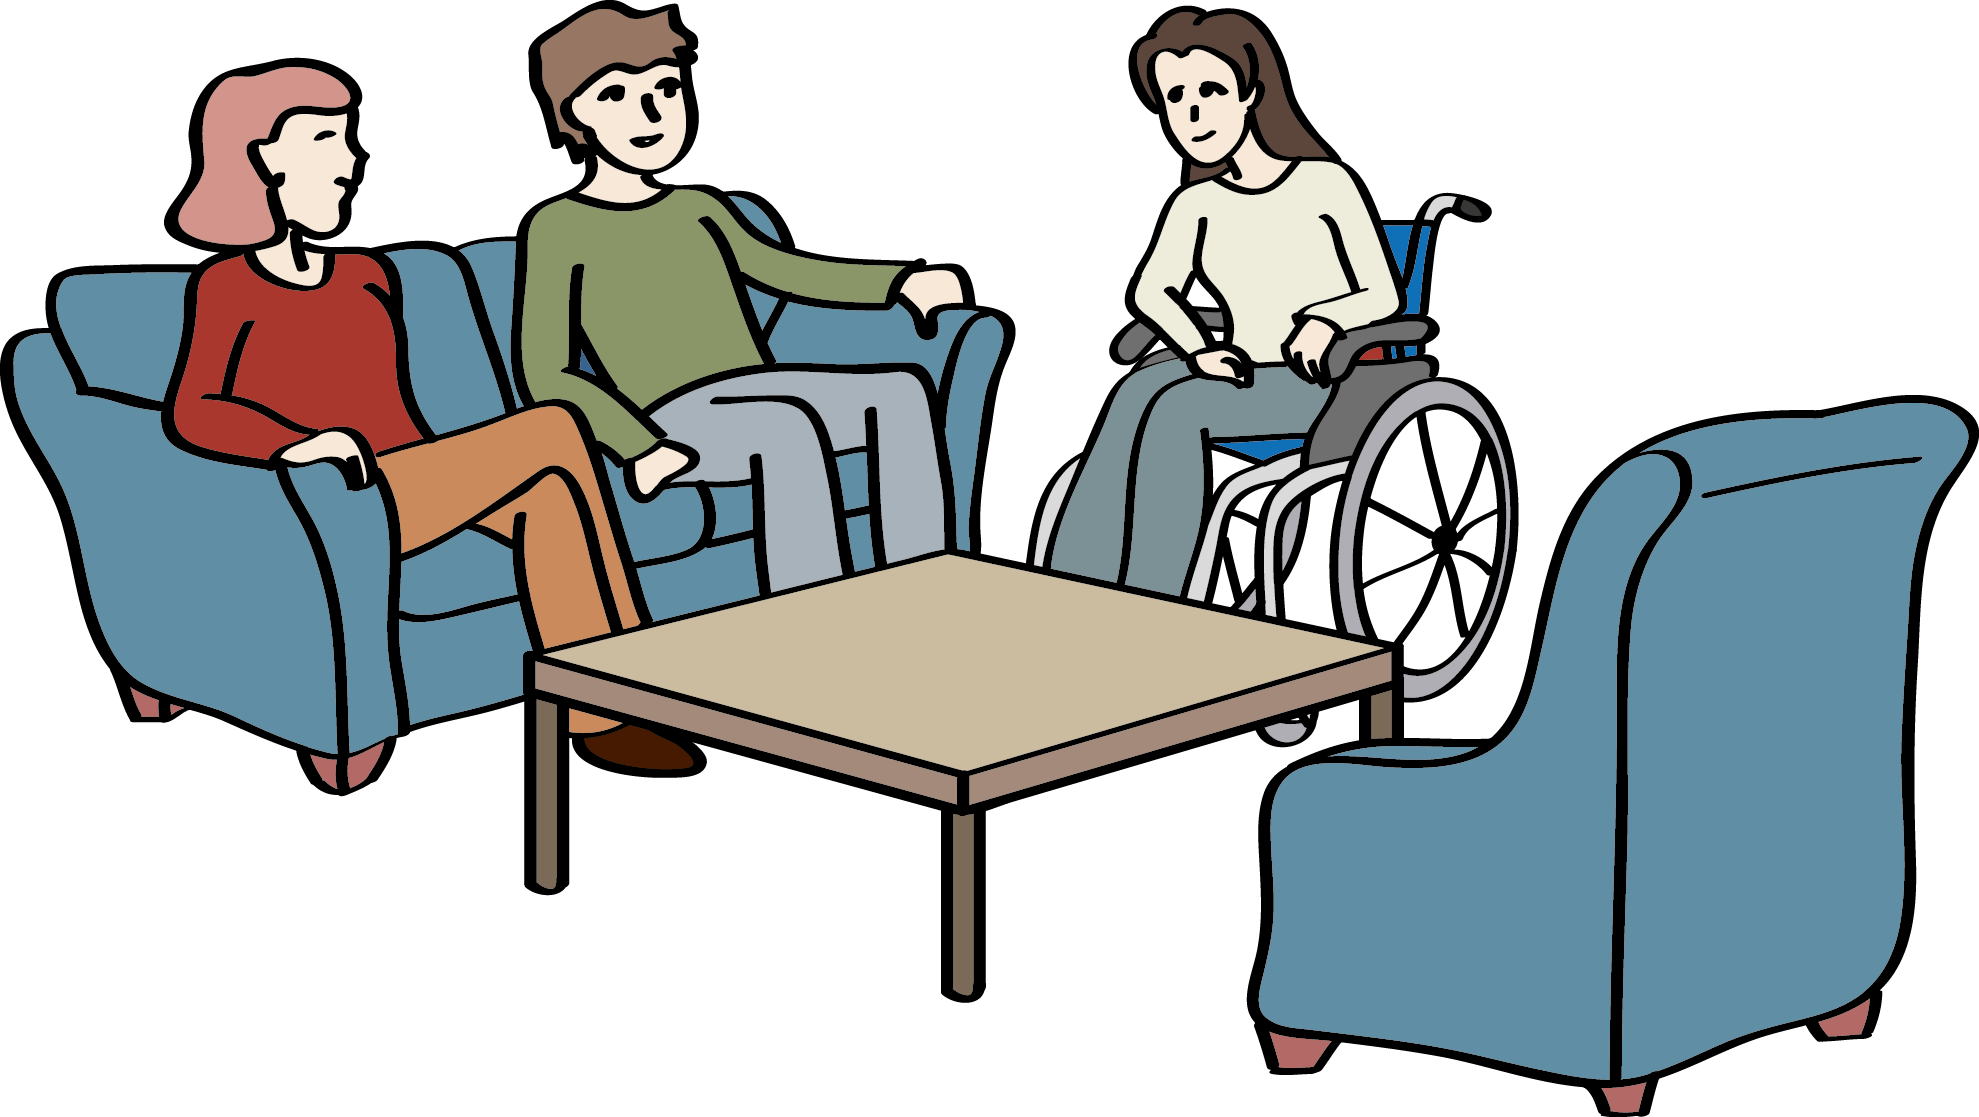 Wohngruppe: Drei Menschen sitzen im Wohnzimmer zusammen